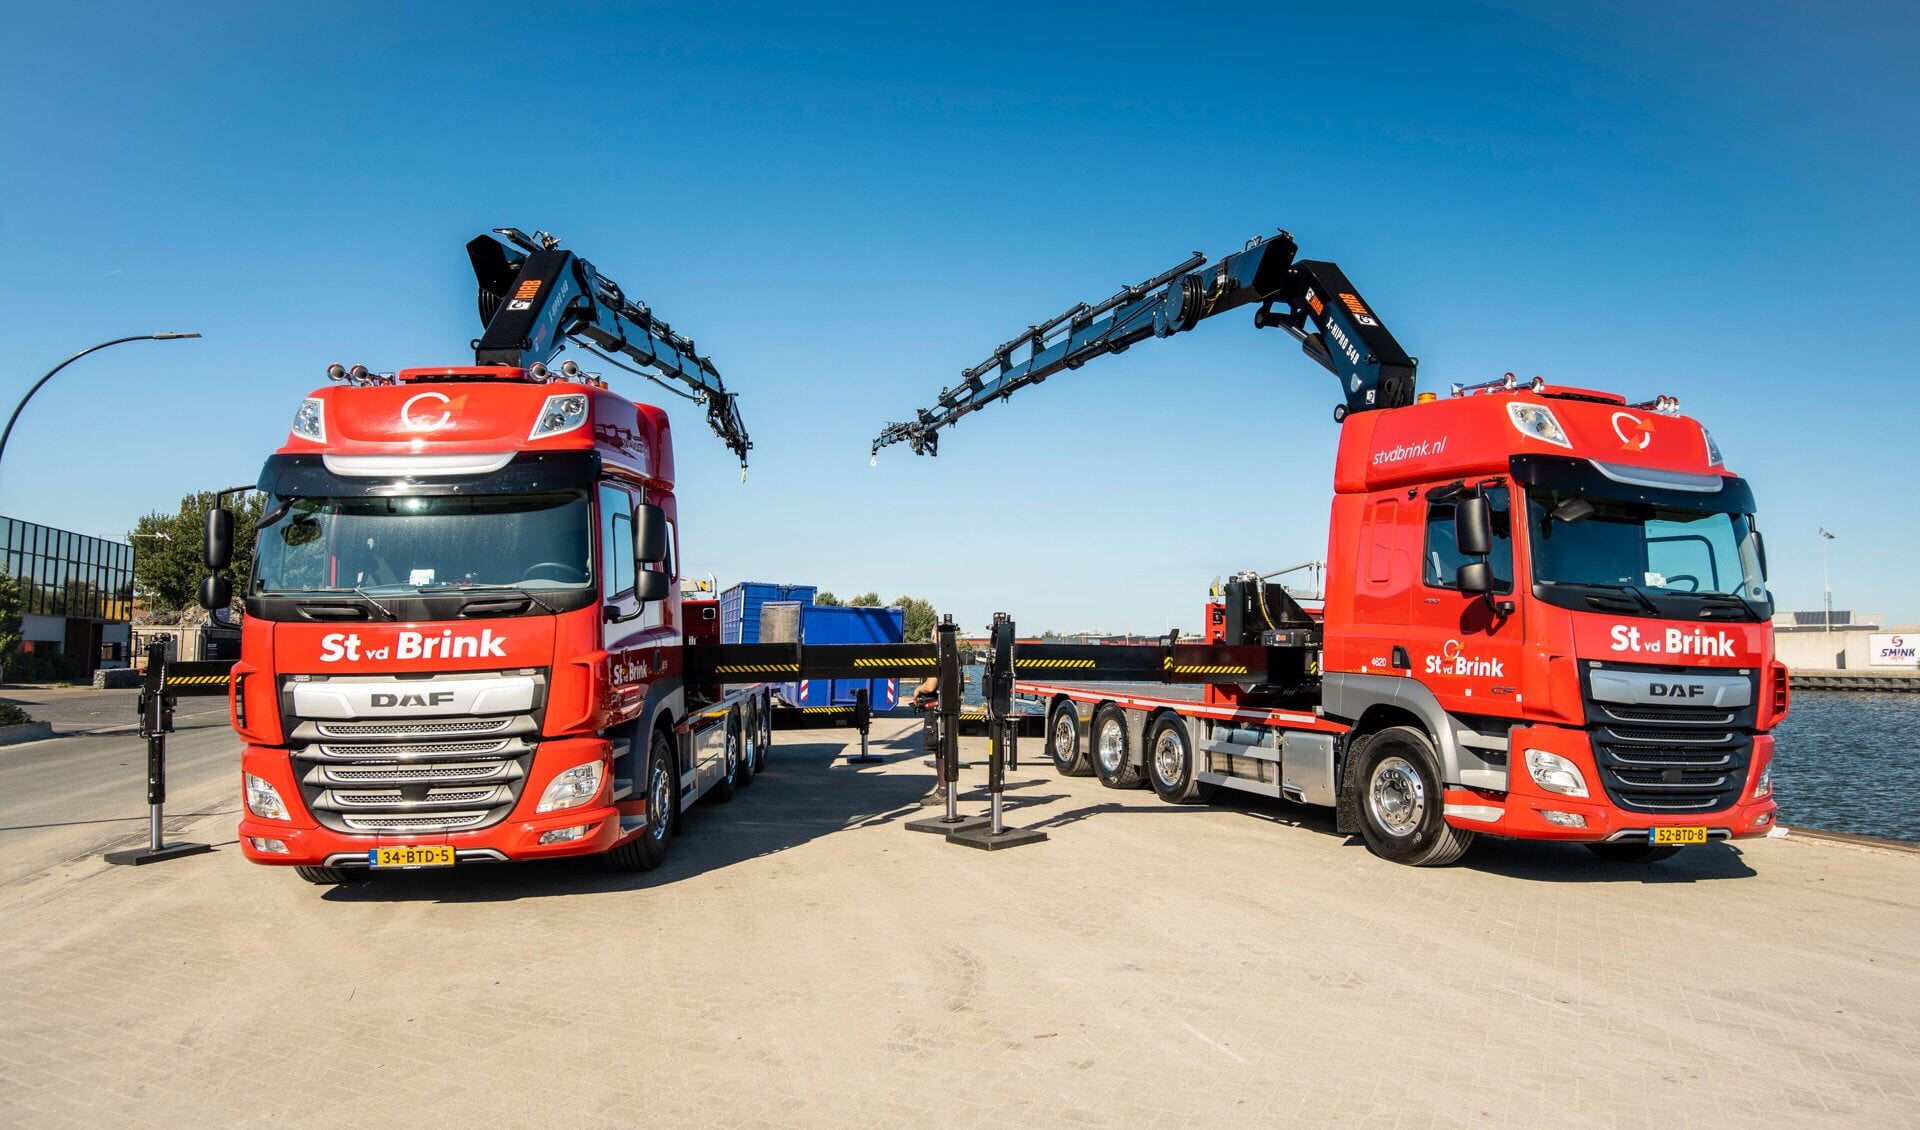 Transportbedrijf St vd Brink kondigt de overname van transportactiviteiten en de medewerkers van Jan Hofman Transport in Vroomshoop aan.